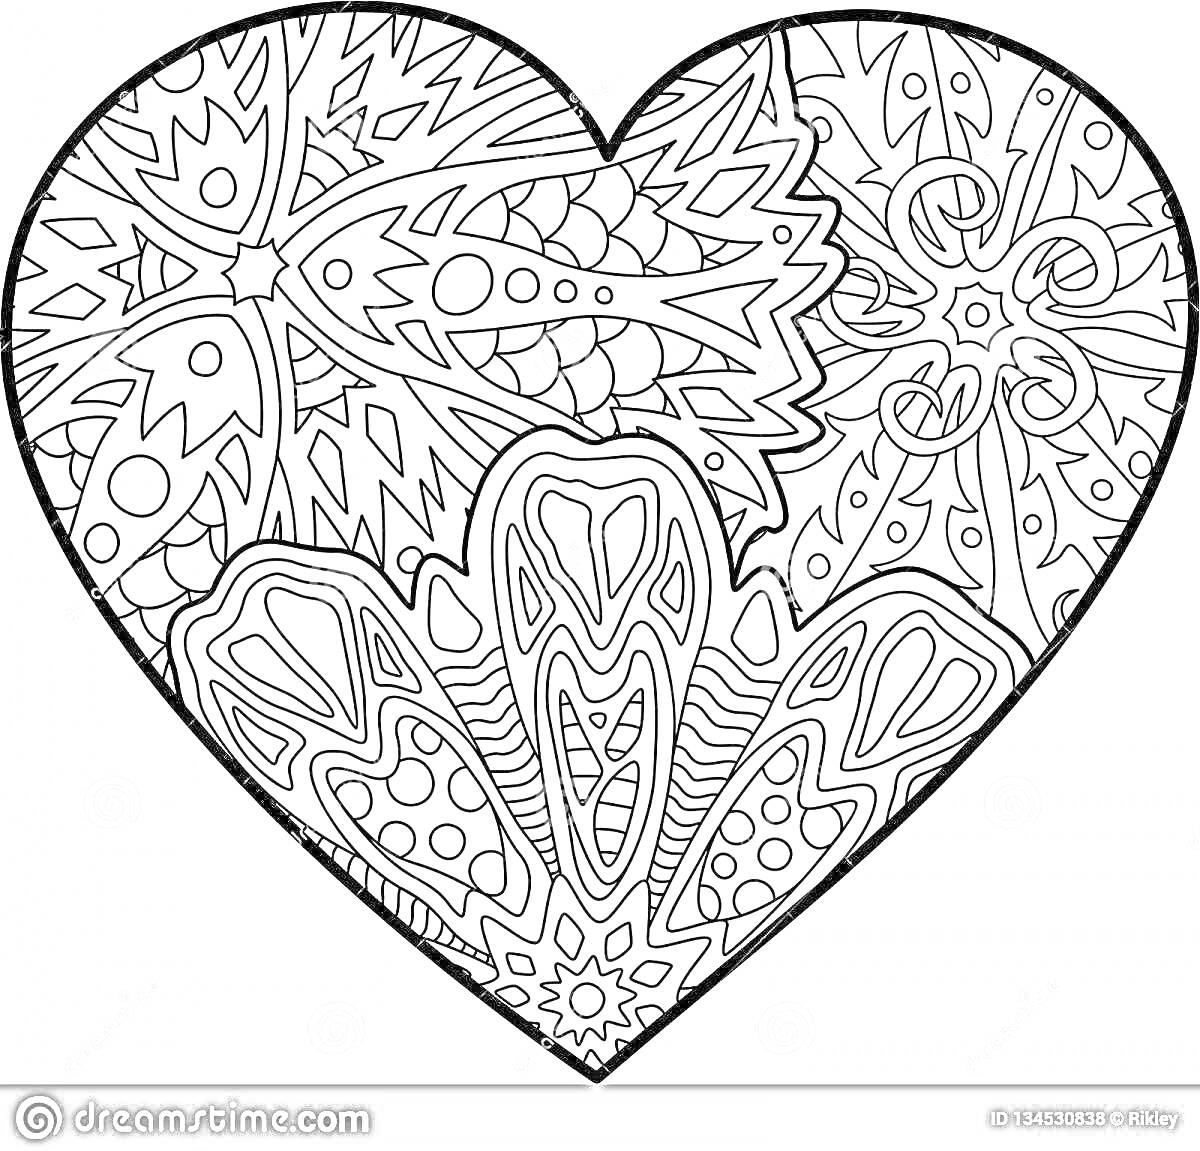 Раскраска Сердечко с узорами для раскрашивания по номерам, абстрактные элементы, цветочные и геометрические мотивы